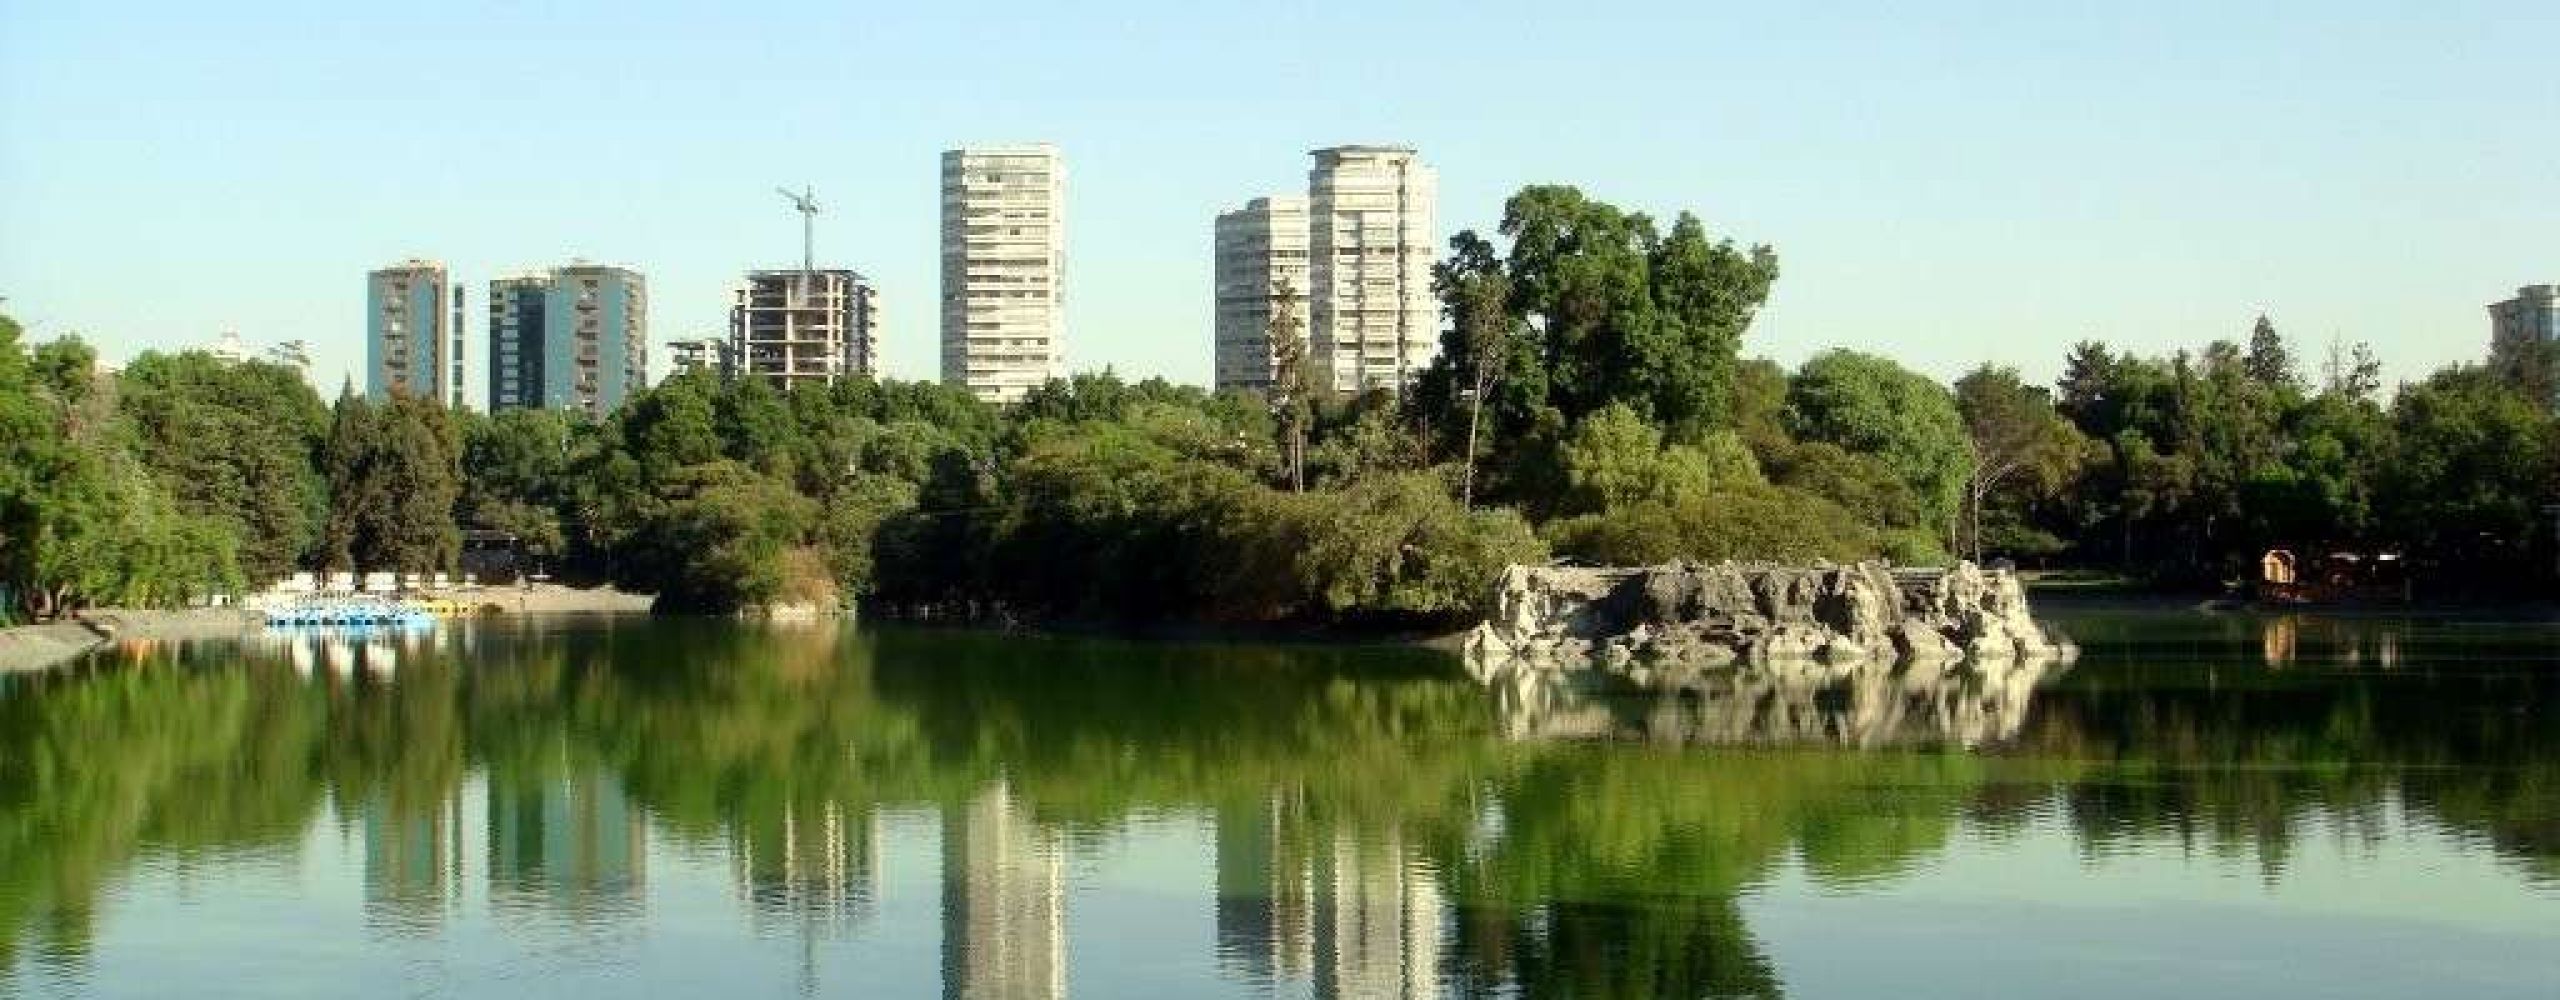 Urban parks: Chapultepec Park in Mexico City